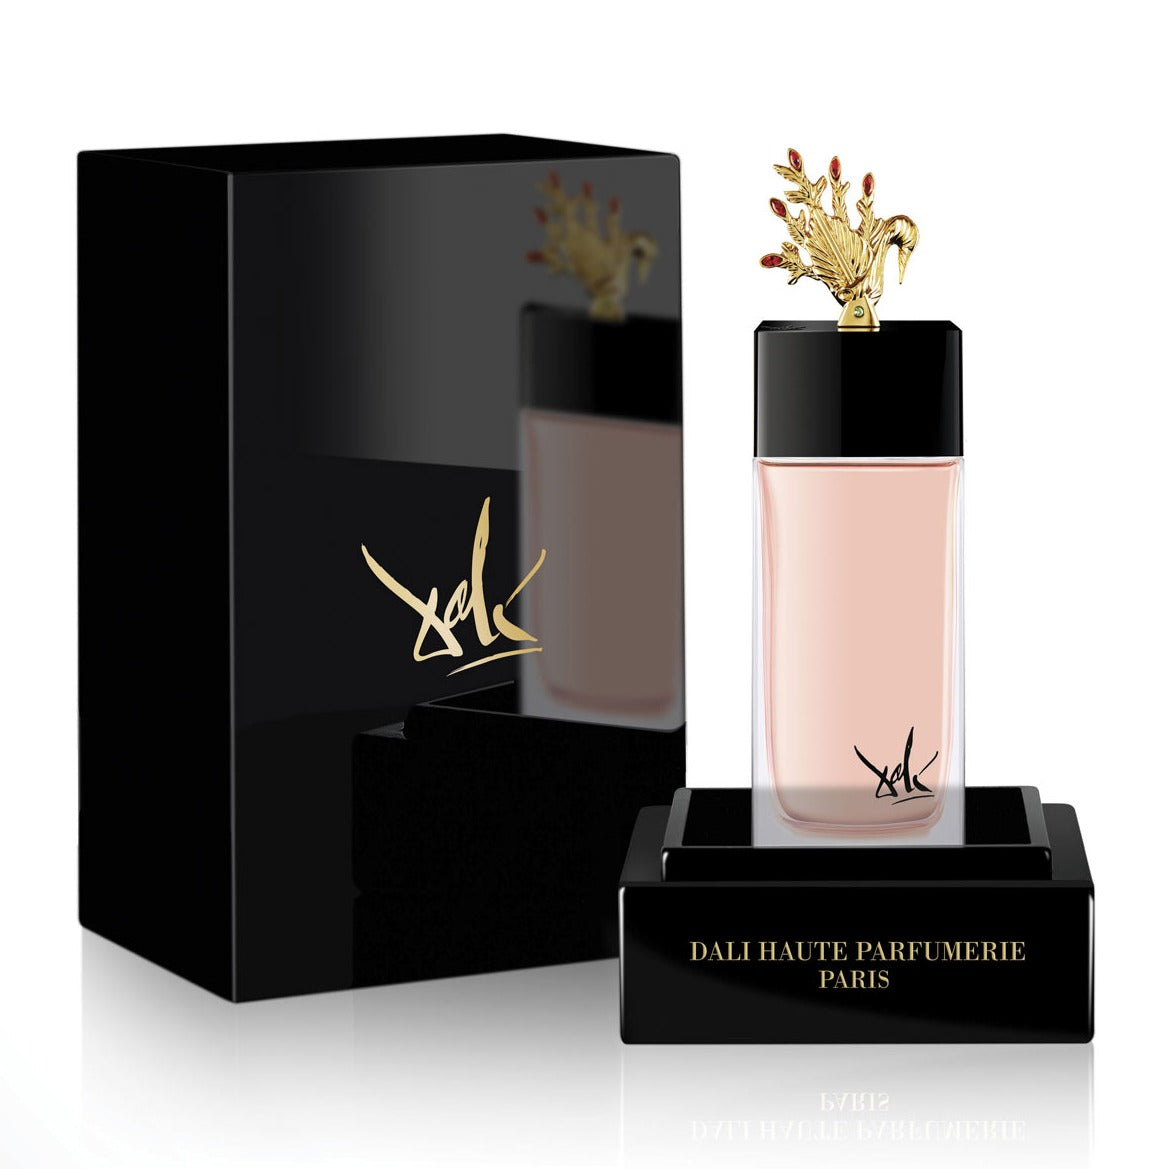 Melodie du Cygne de la Main (The Hand) 100ml Eau de Parfum Bottle and Box by Dalí Haute Parfumerie